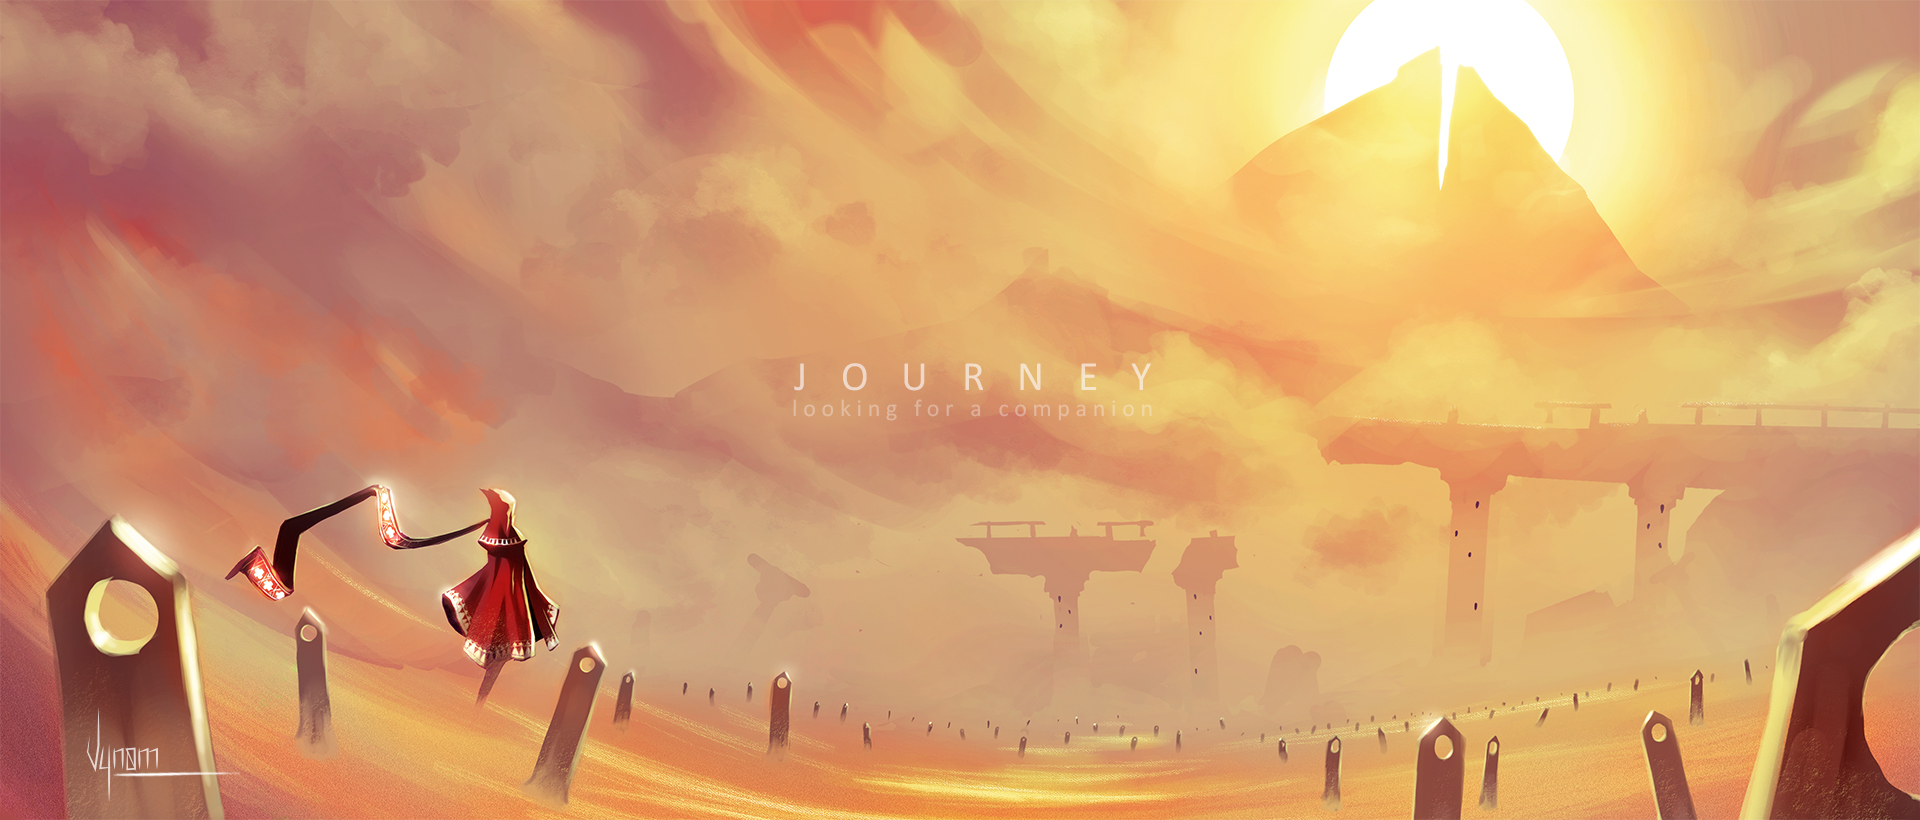 May journey. Journey игра. Journey игра Art. Journey 2012. Journey пейзажи.